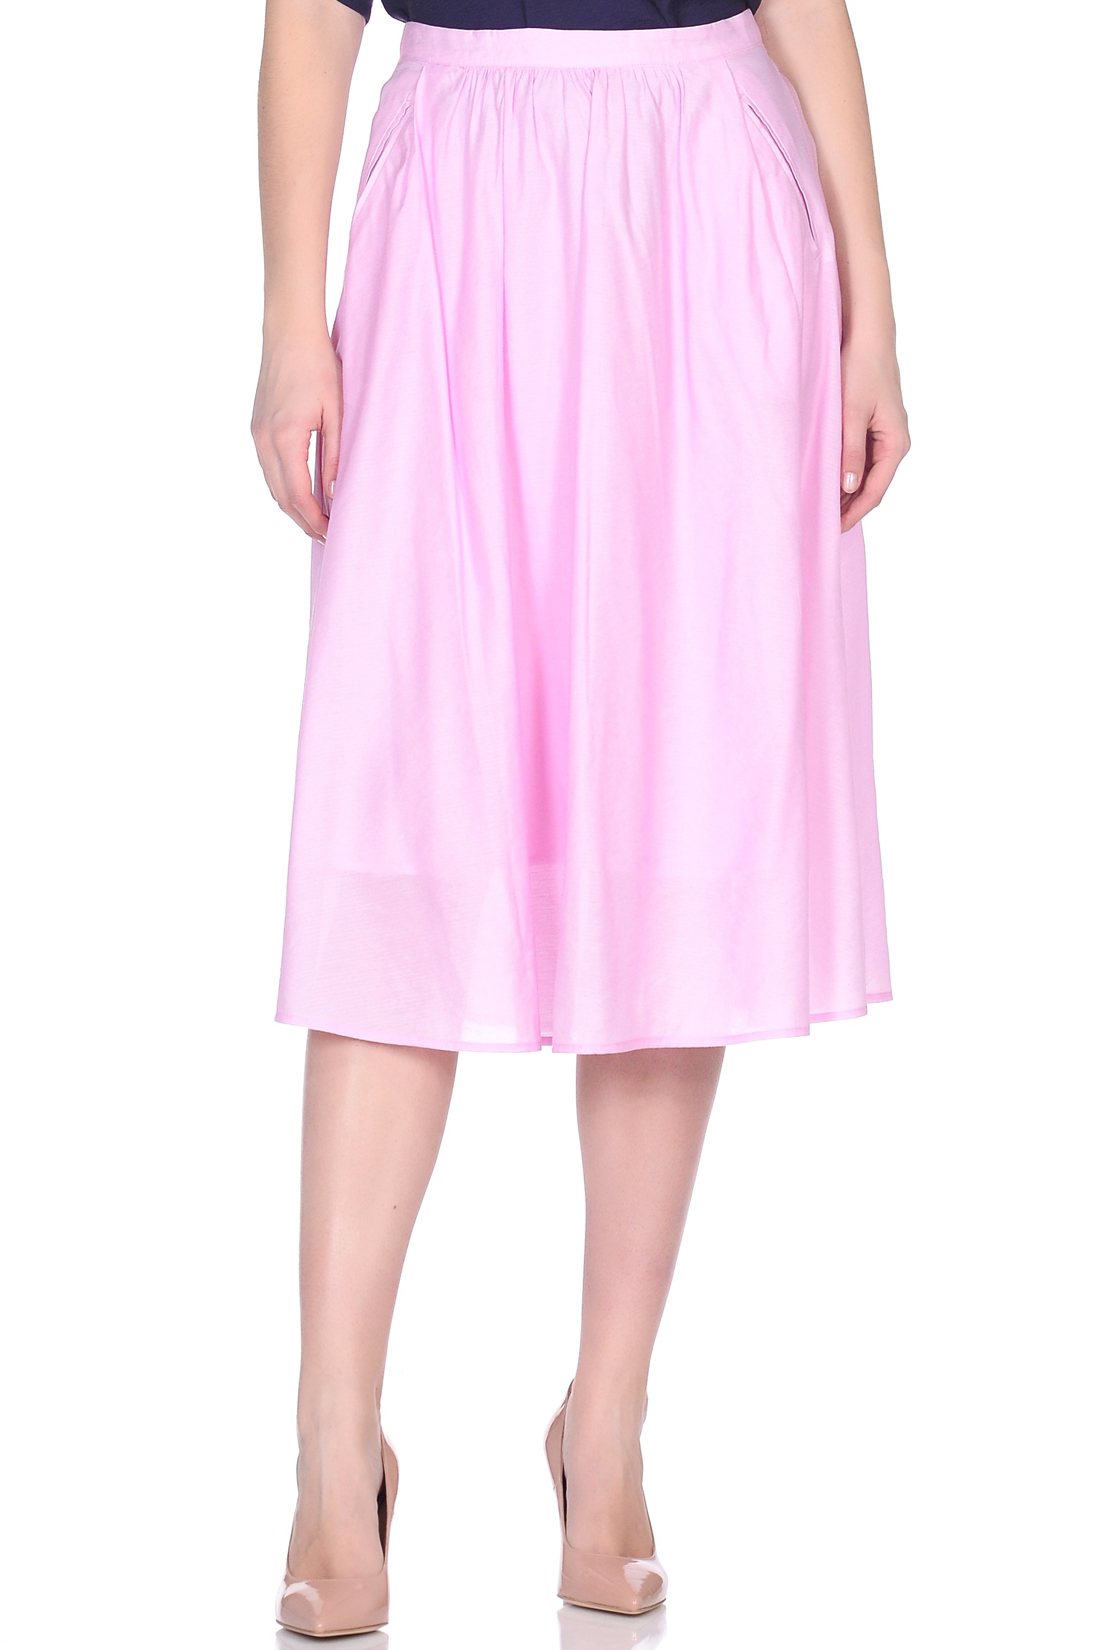 Юбка женская Baon B479006 розовая XL